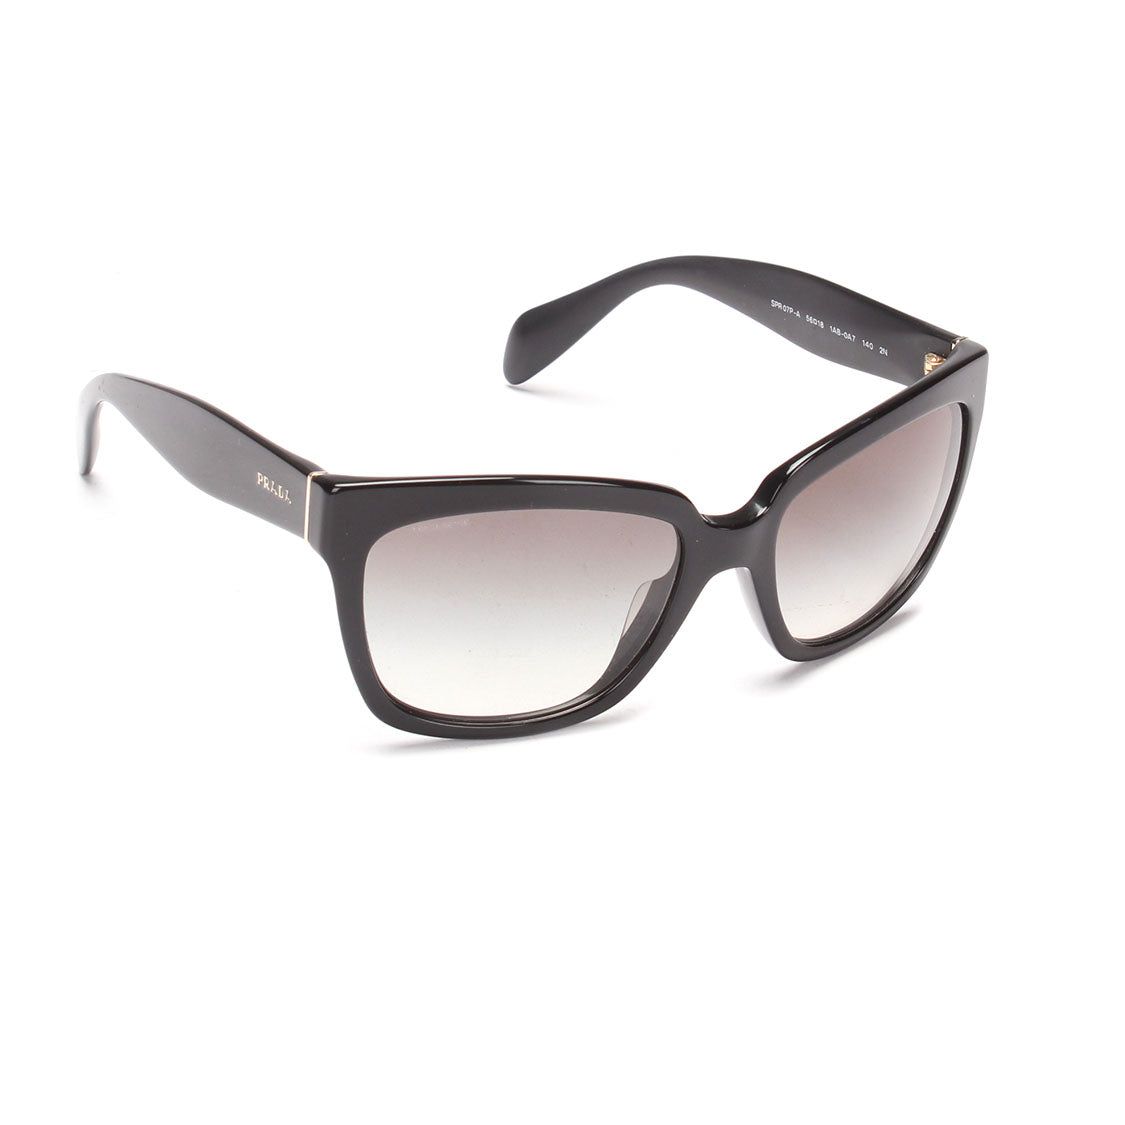 Prada Tinted Sunglasses Plastic Sunglasses SPR 07 in Good condition